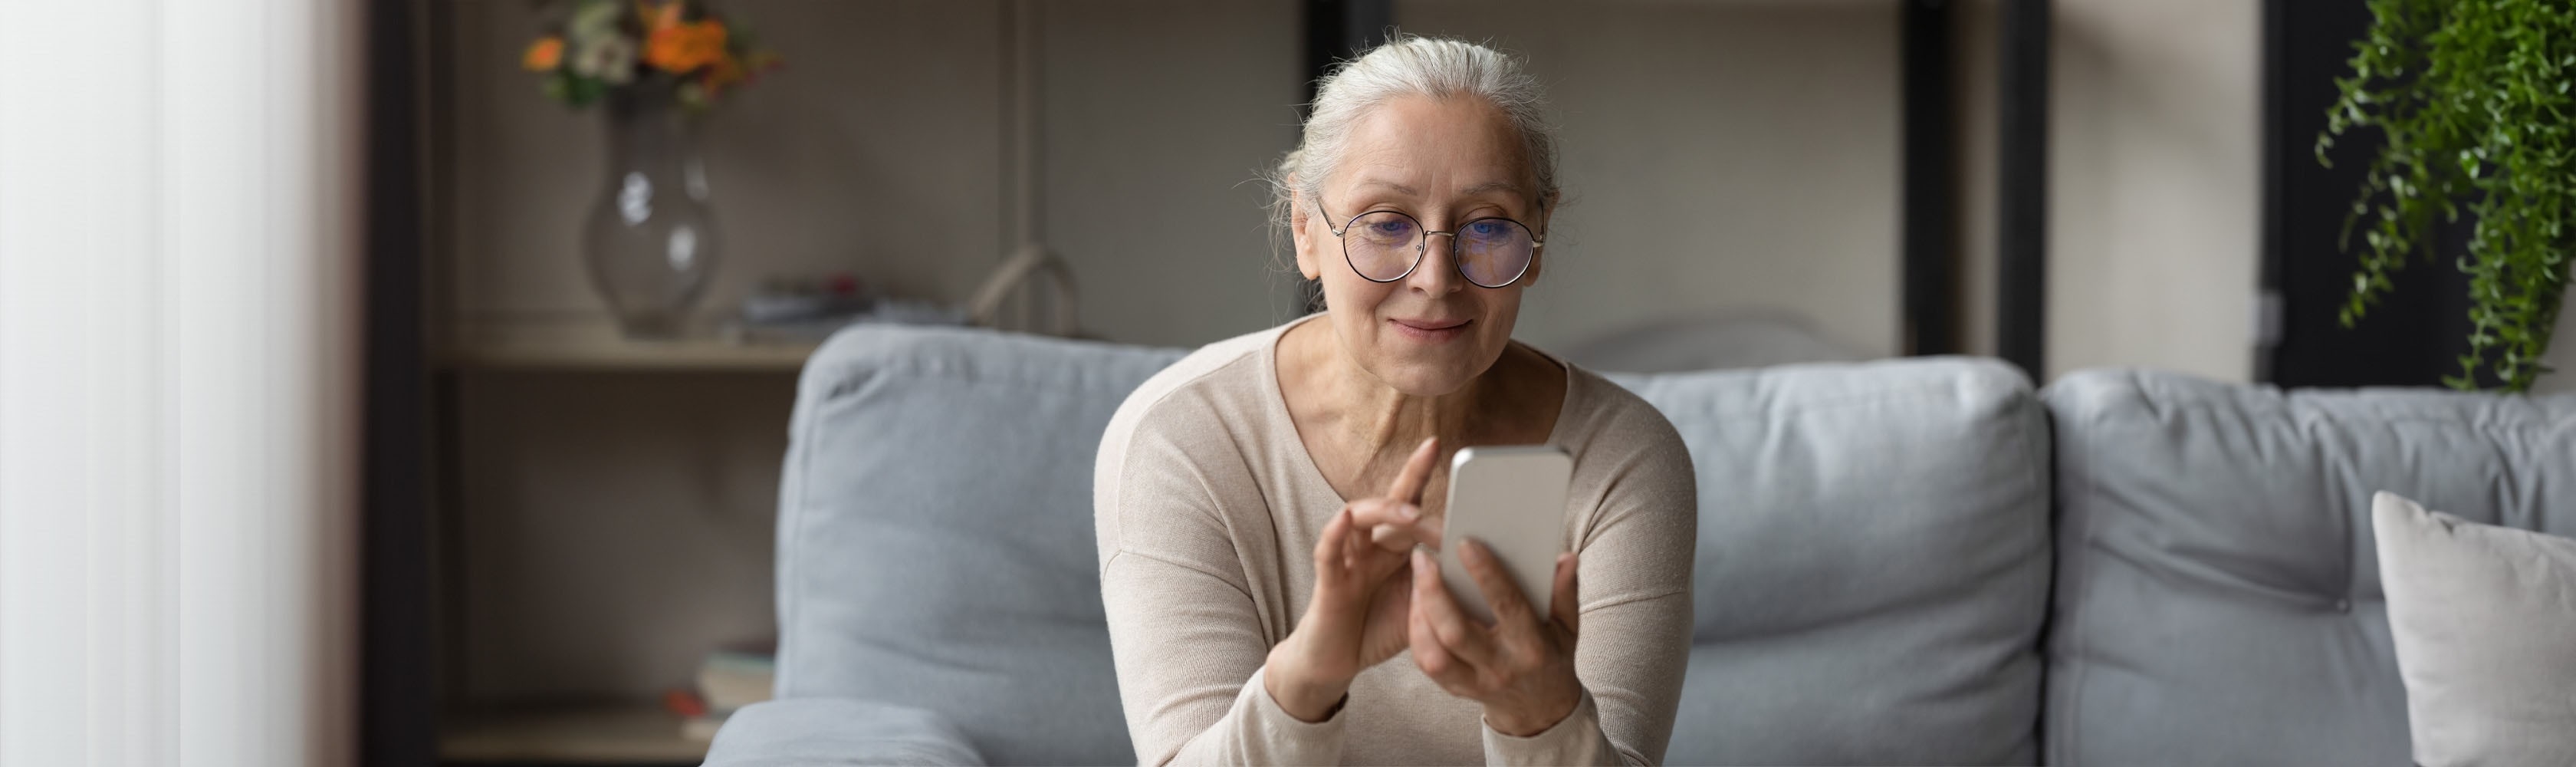 Une femme âgée utilise une application de prévention  sur son smartphone.